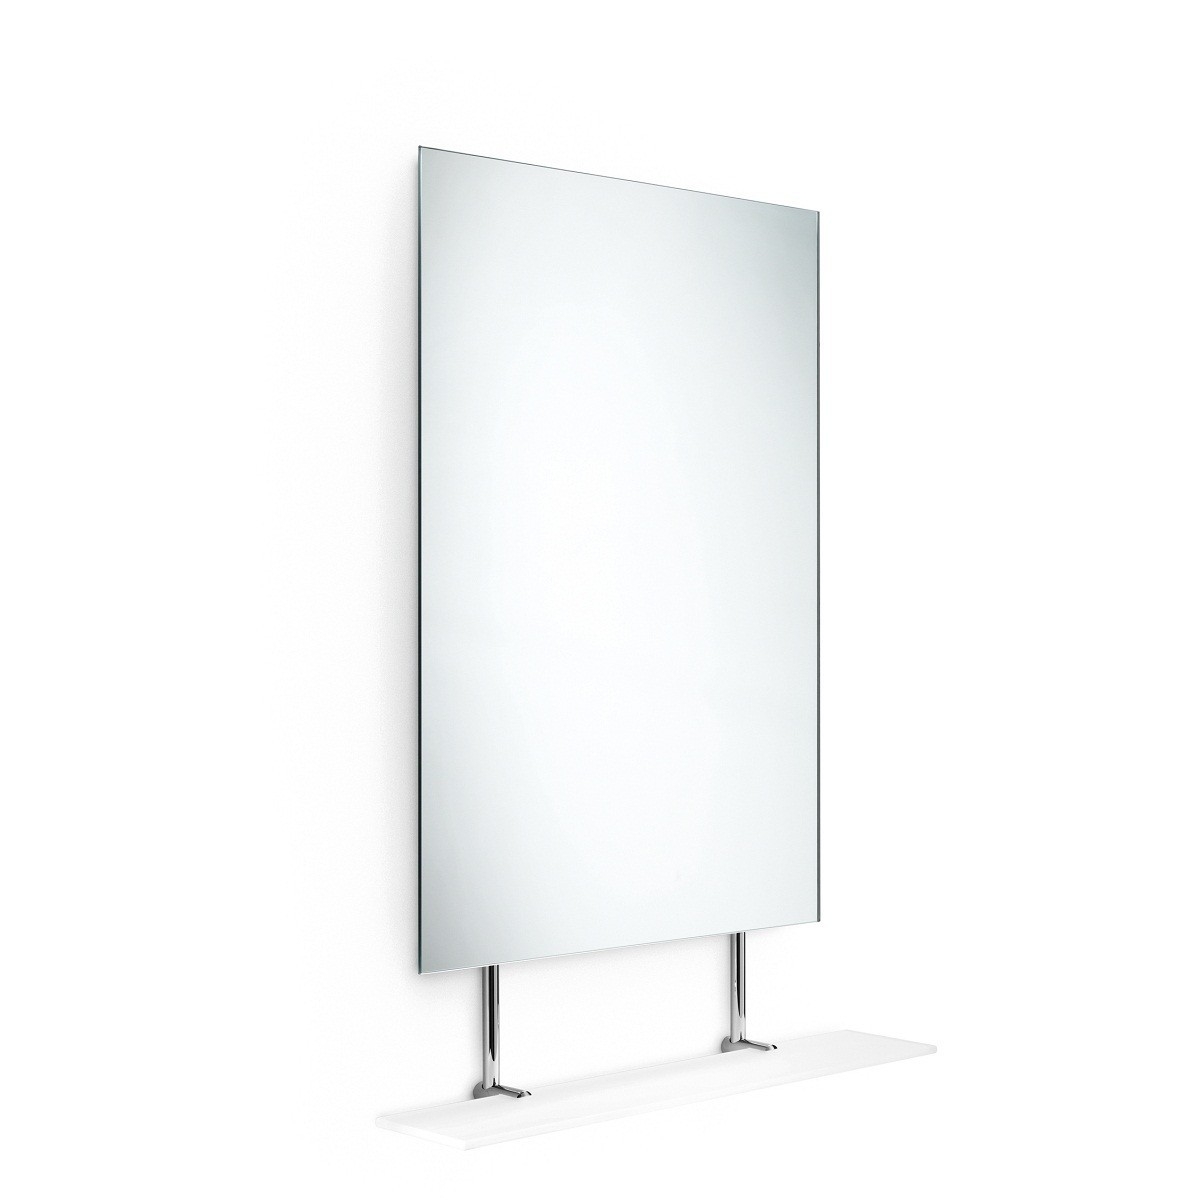 Speci 5621 mirror with glass shelf 23.6 x 33.5